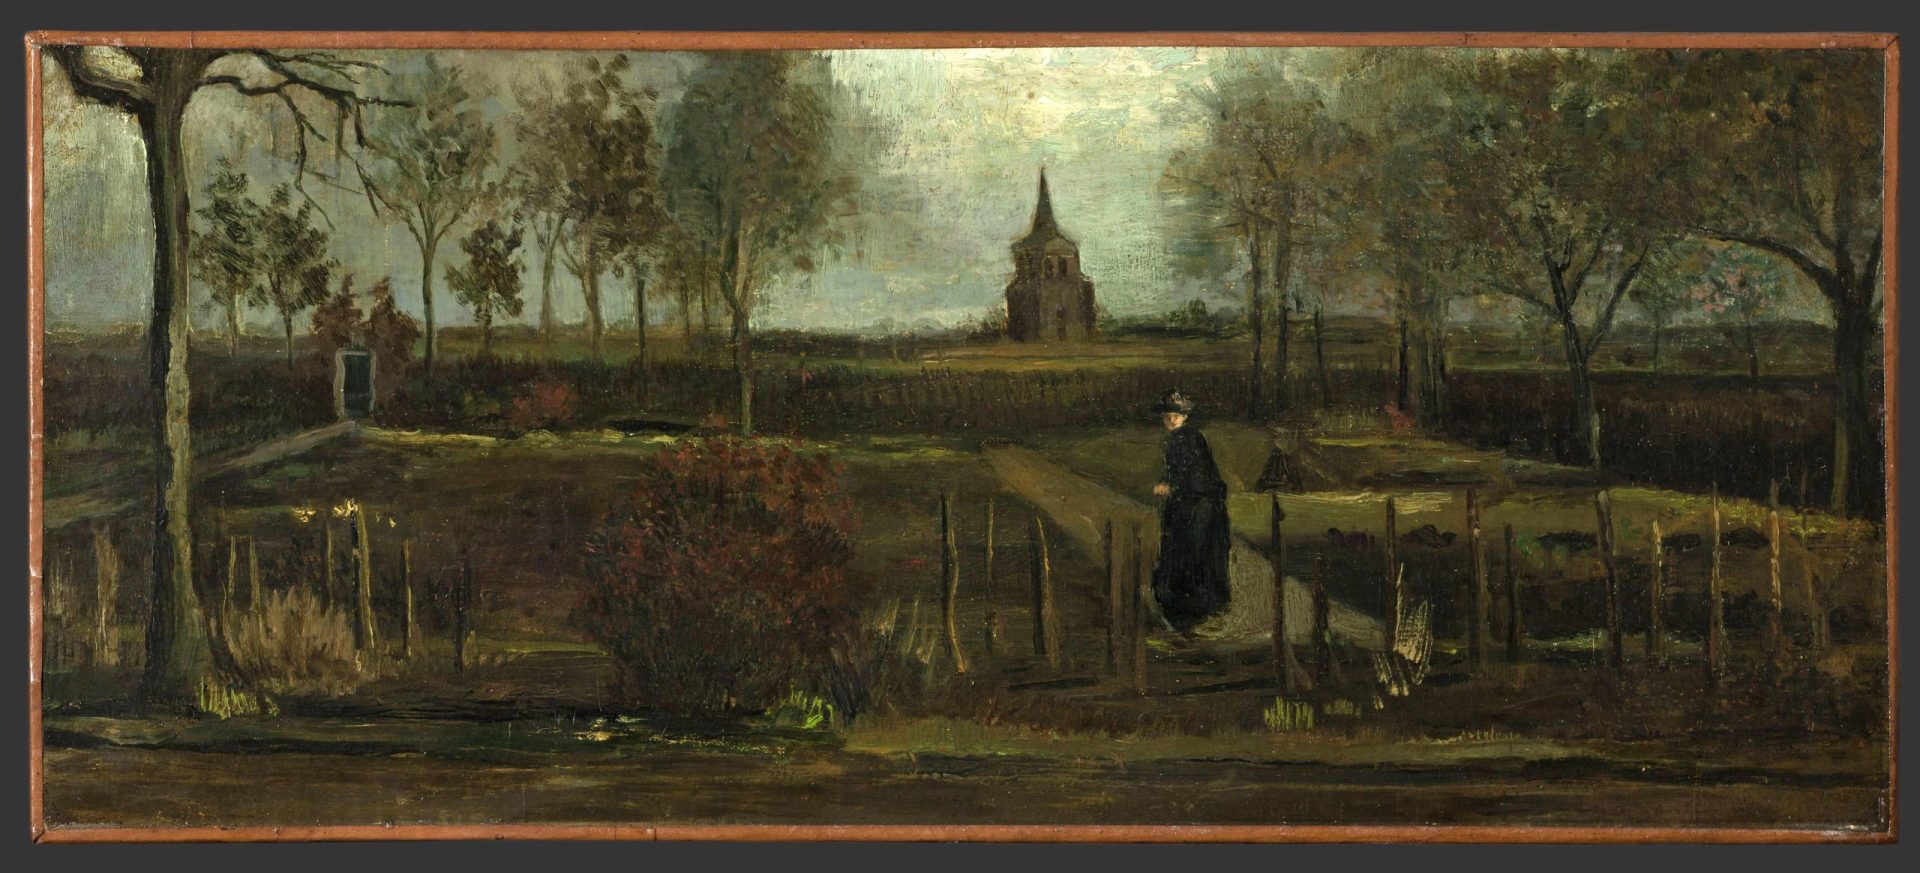 Quadro de Van Gogh roubado de museu fechado devido à pandemia